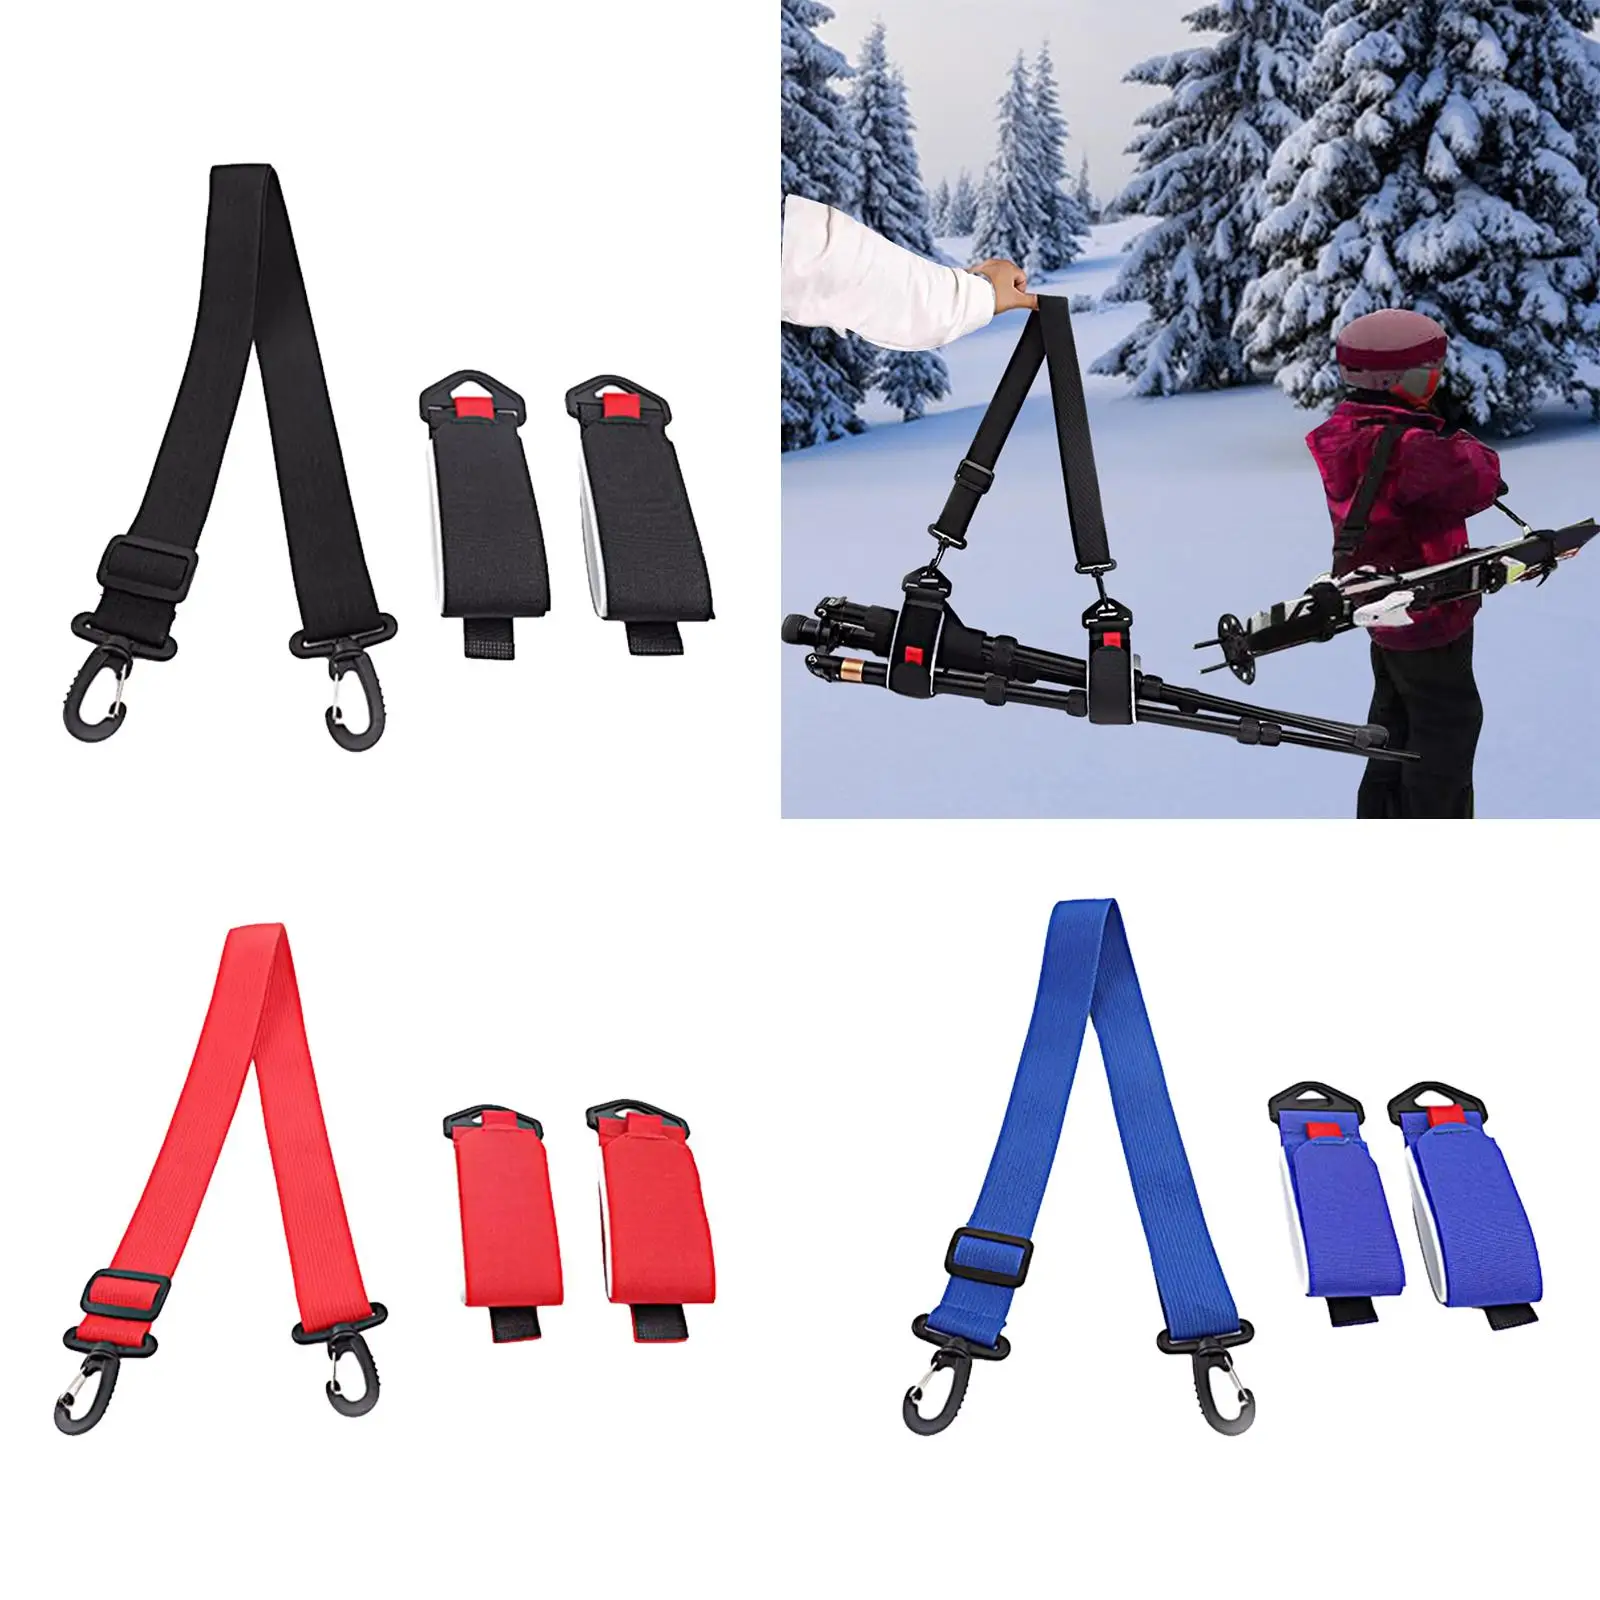 Ski Carrier Strap Fixing Belt Adults Kids Shoulder Carrier Lash Ski Handle Strap for Winter Snowboard Ski Board Skiing Outdoor